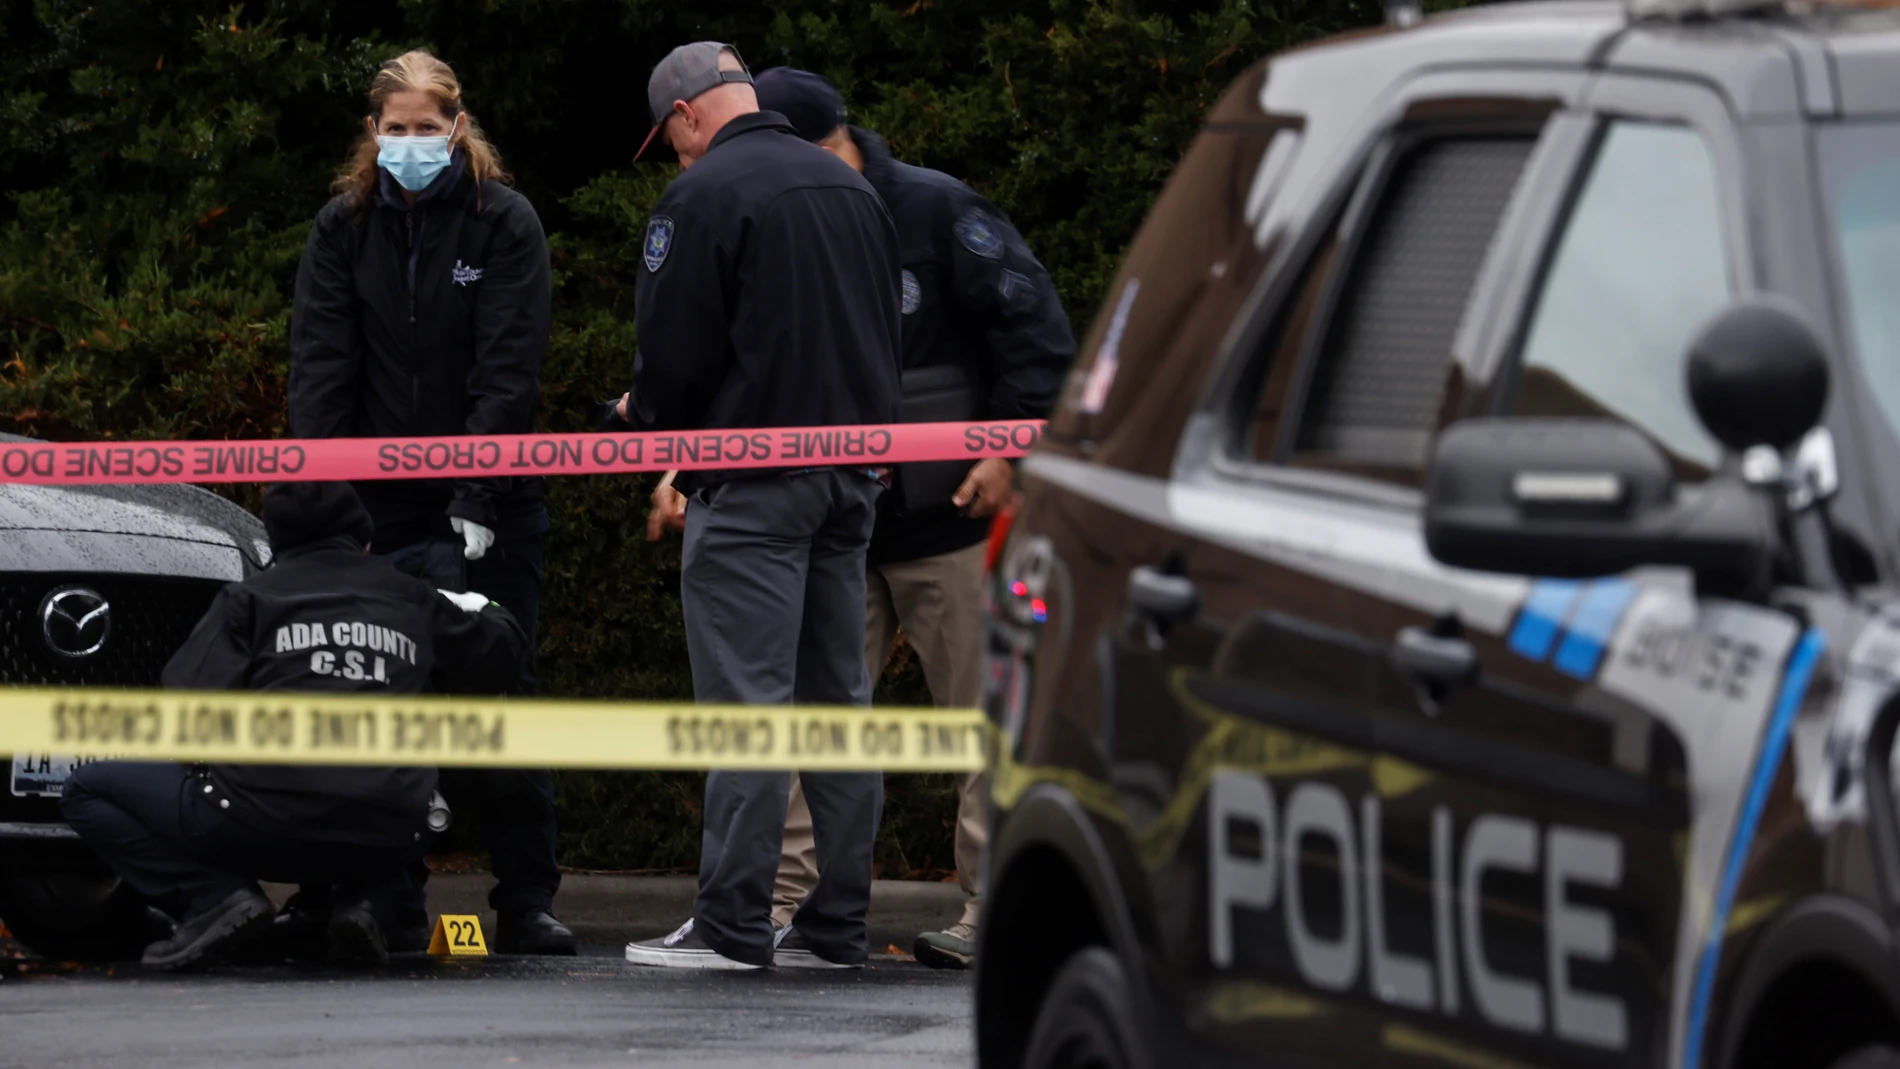 Al menos dos muertos y cuatro heridos en un tiroteo en un centro comercial en Idaho, EEUU